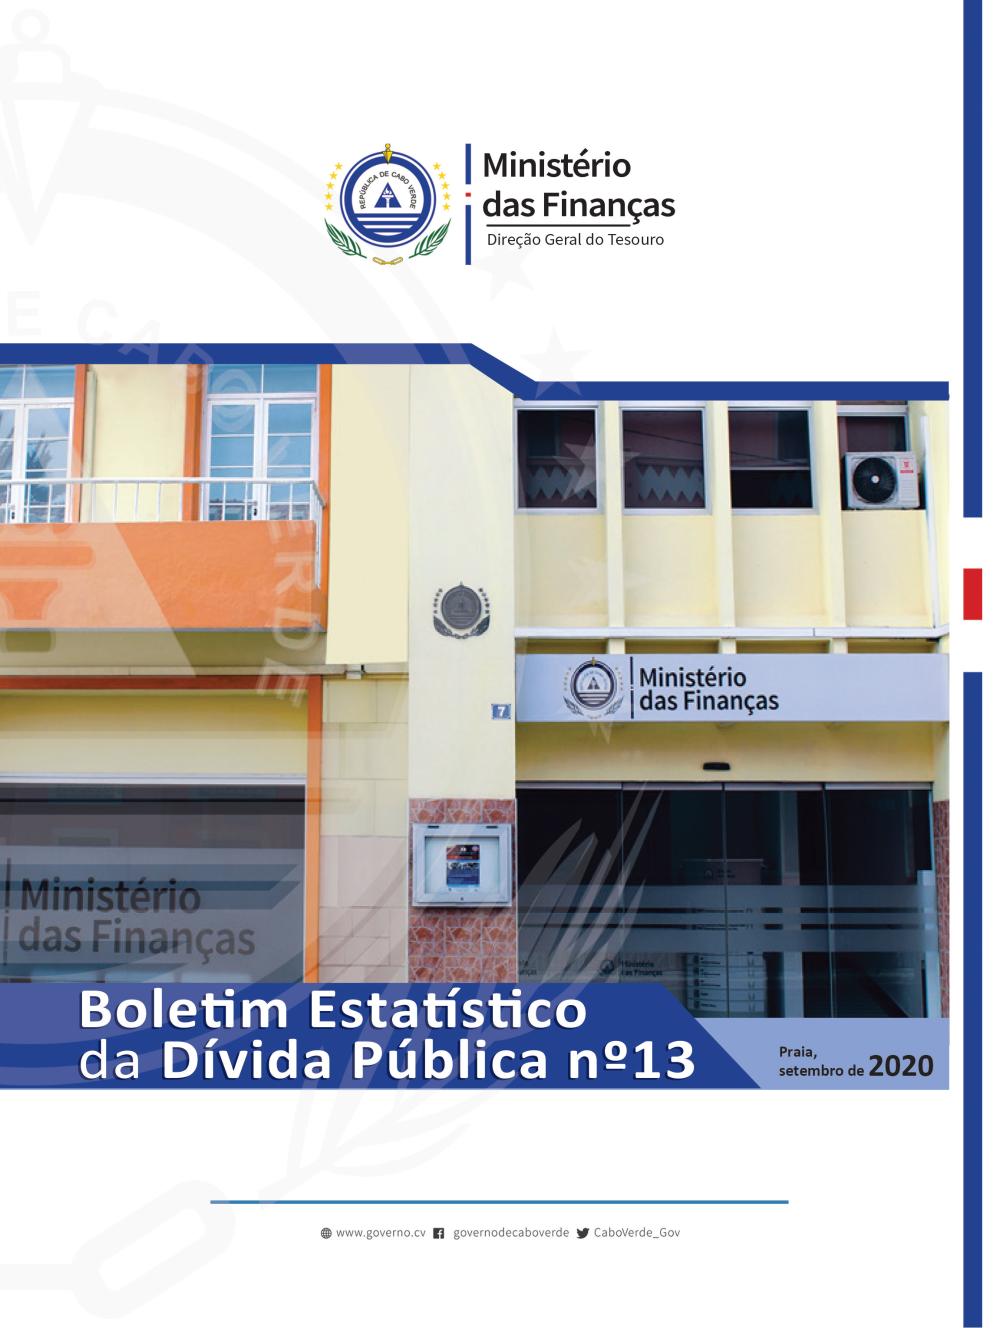 Resumo do Boletim da Divida Publica – 4º Trimestre de 2019 - Asset Display  Page - Ministério das Finanças